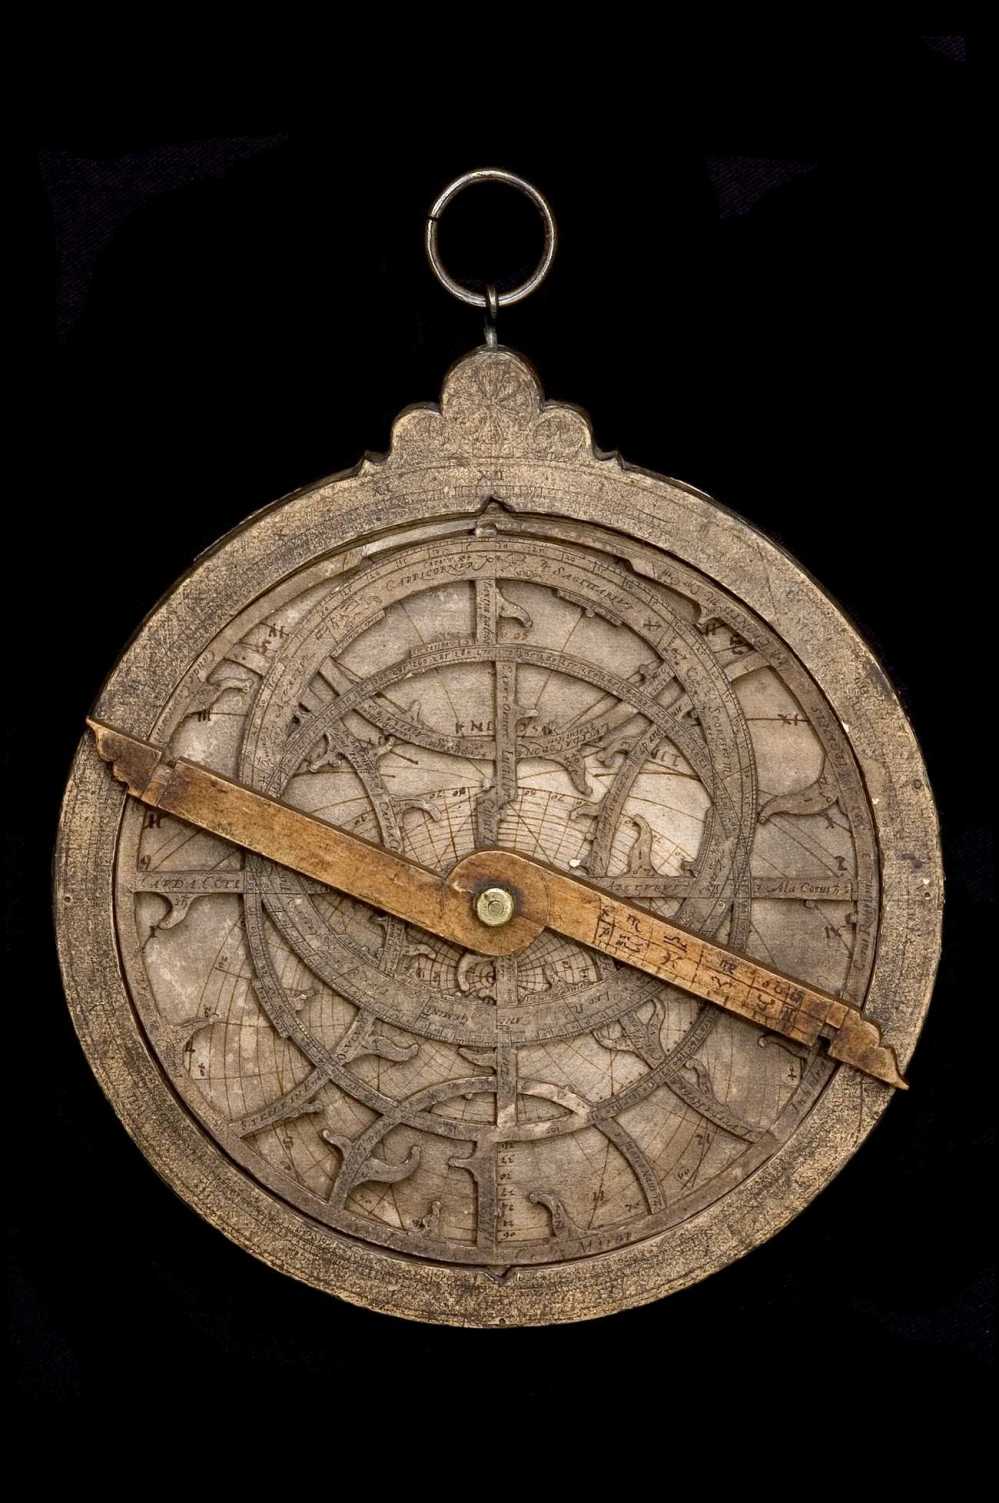 Imagen de previsualización para Astrolabio de papel, de Johann Krabbe, alemán, 1583